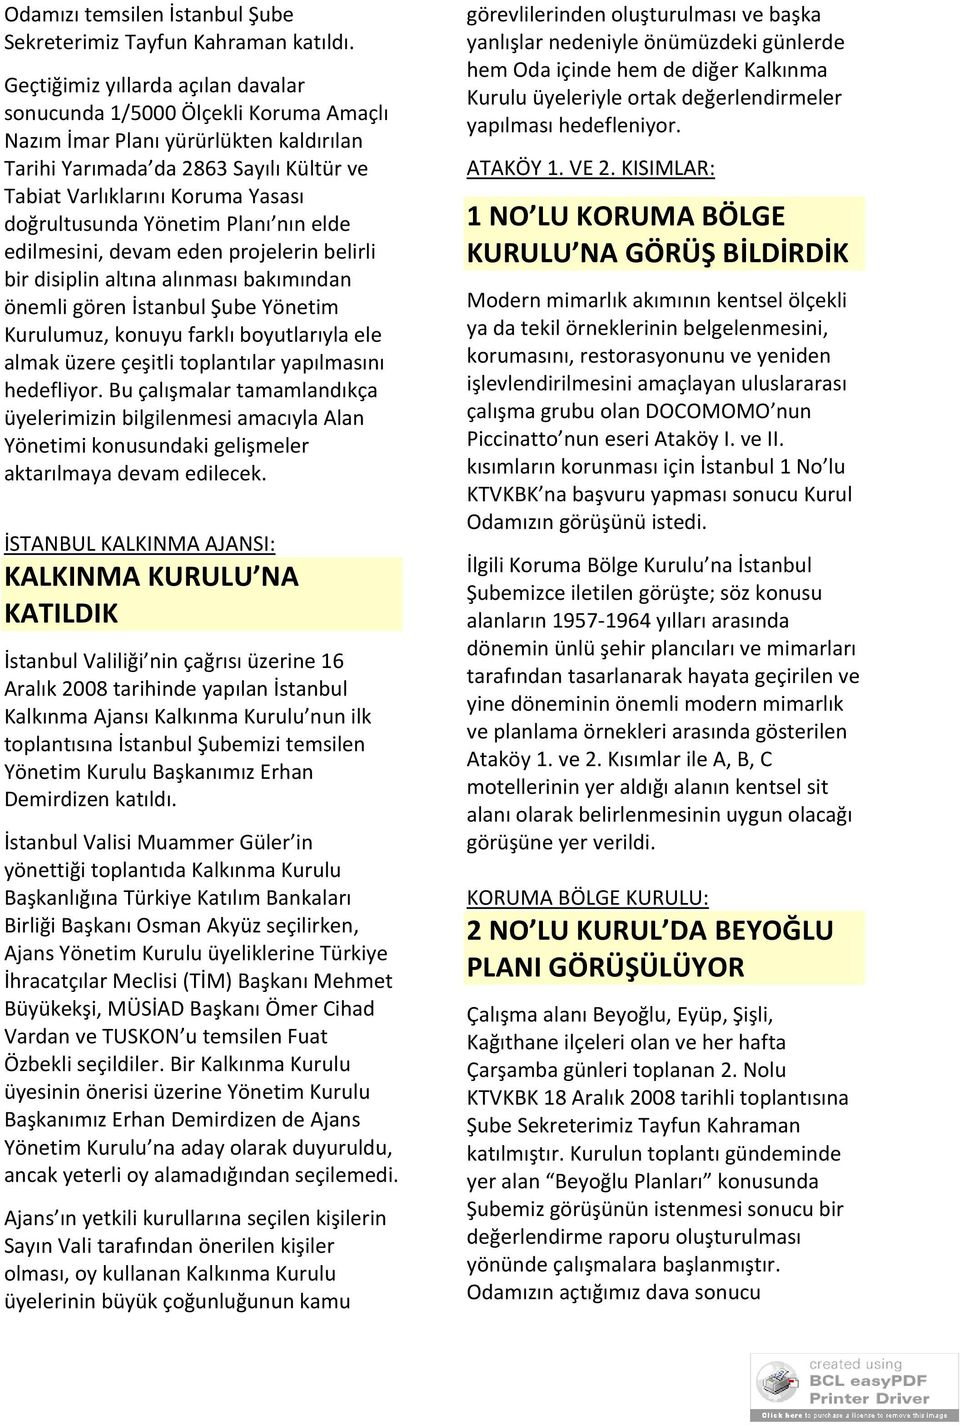 doğrultusunda Yönetim Planı nın elde edilmesini, devam eden projelerin belirli bir disiplin altına alınması bakımından önemli gören İstanbul Şube Yönetim Kurulumuz, konuyu farklı boyutlarıyla ele